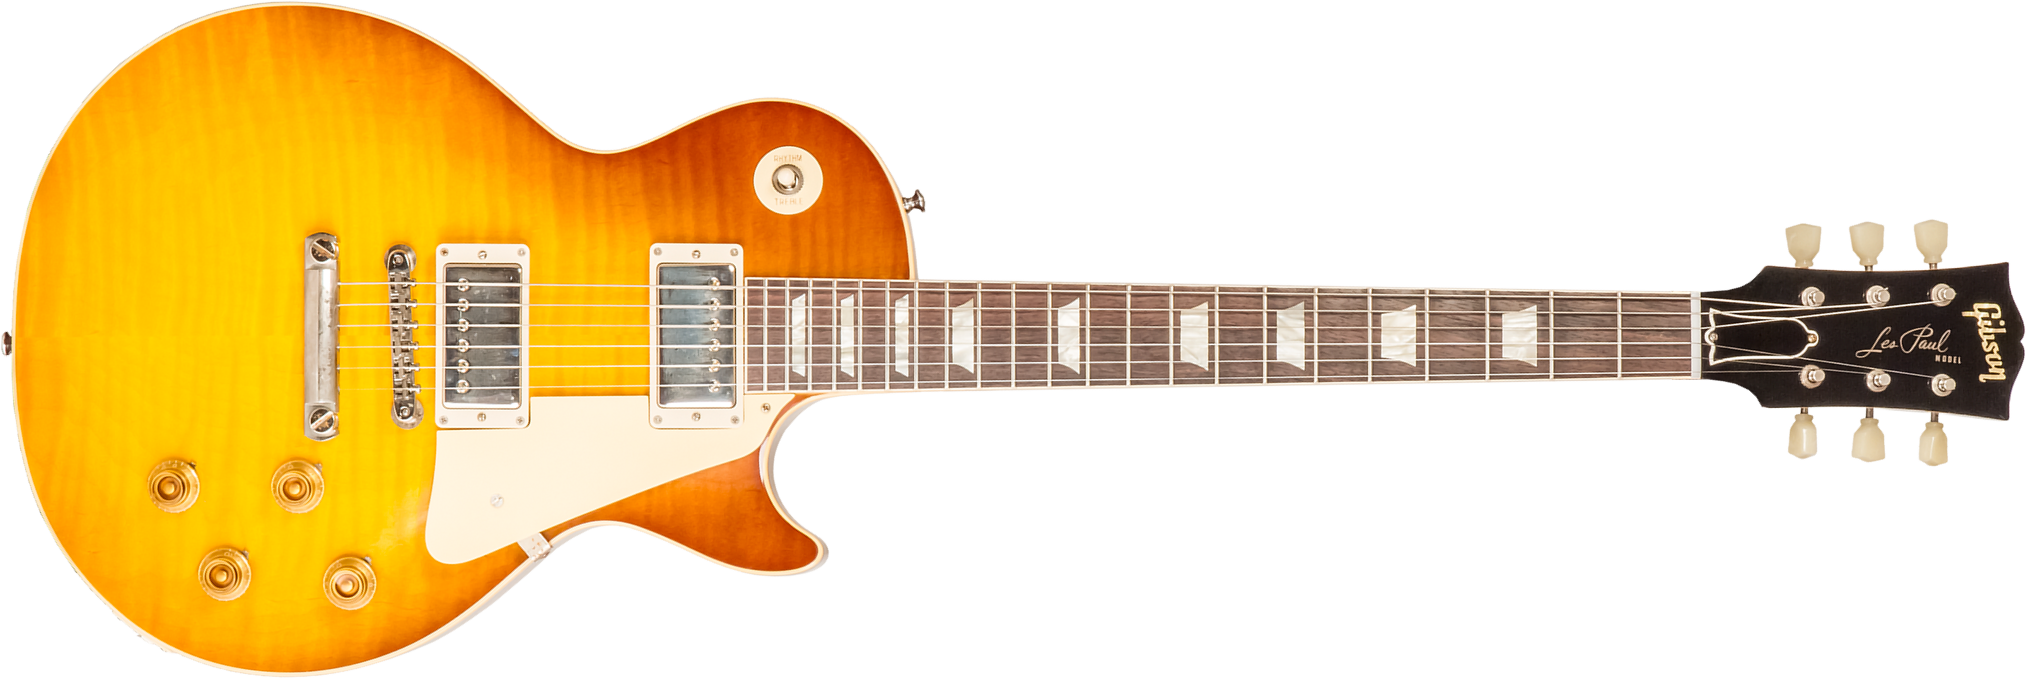 Gibson Custom Shop M2m Les Paul Standard 1959 Reissue 2h Ht Rw #94680 - Murphy Lab Ultra Light Aged  Honey Lemon Fade - Guitare Électrique Single Cut 